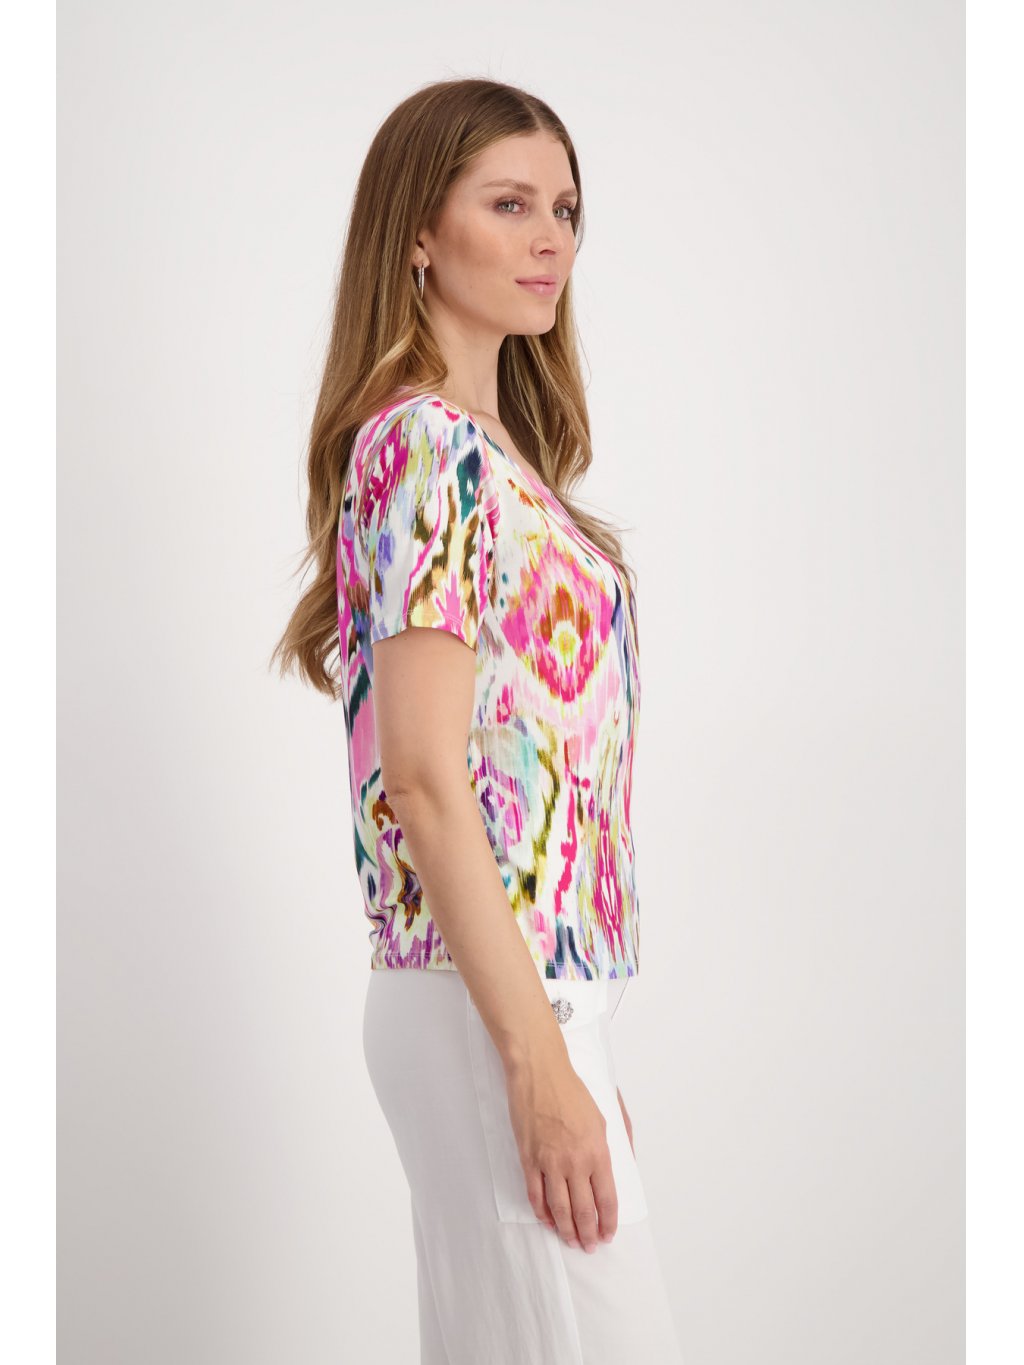 Tričko Monari 8715 růžové pestrobarevné se vzorem 